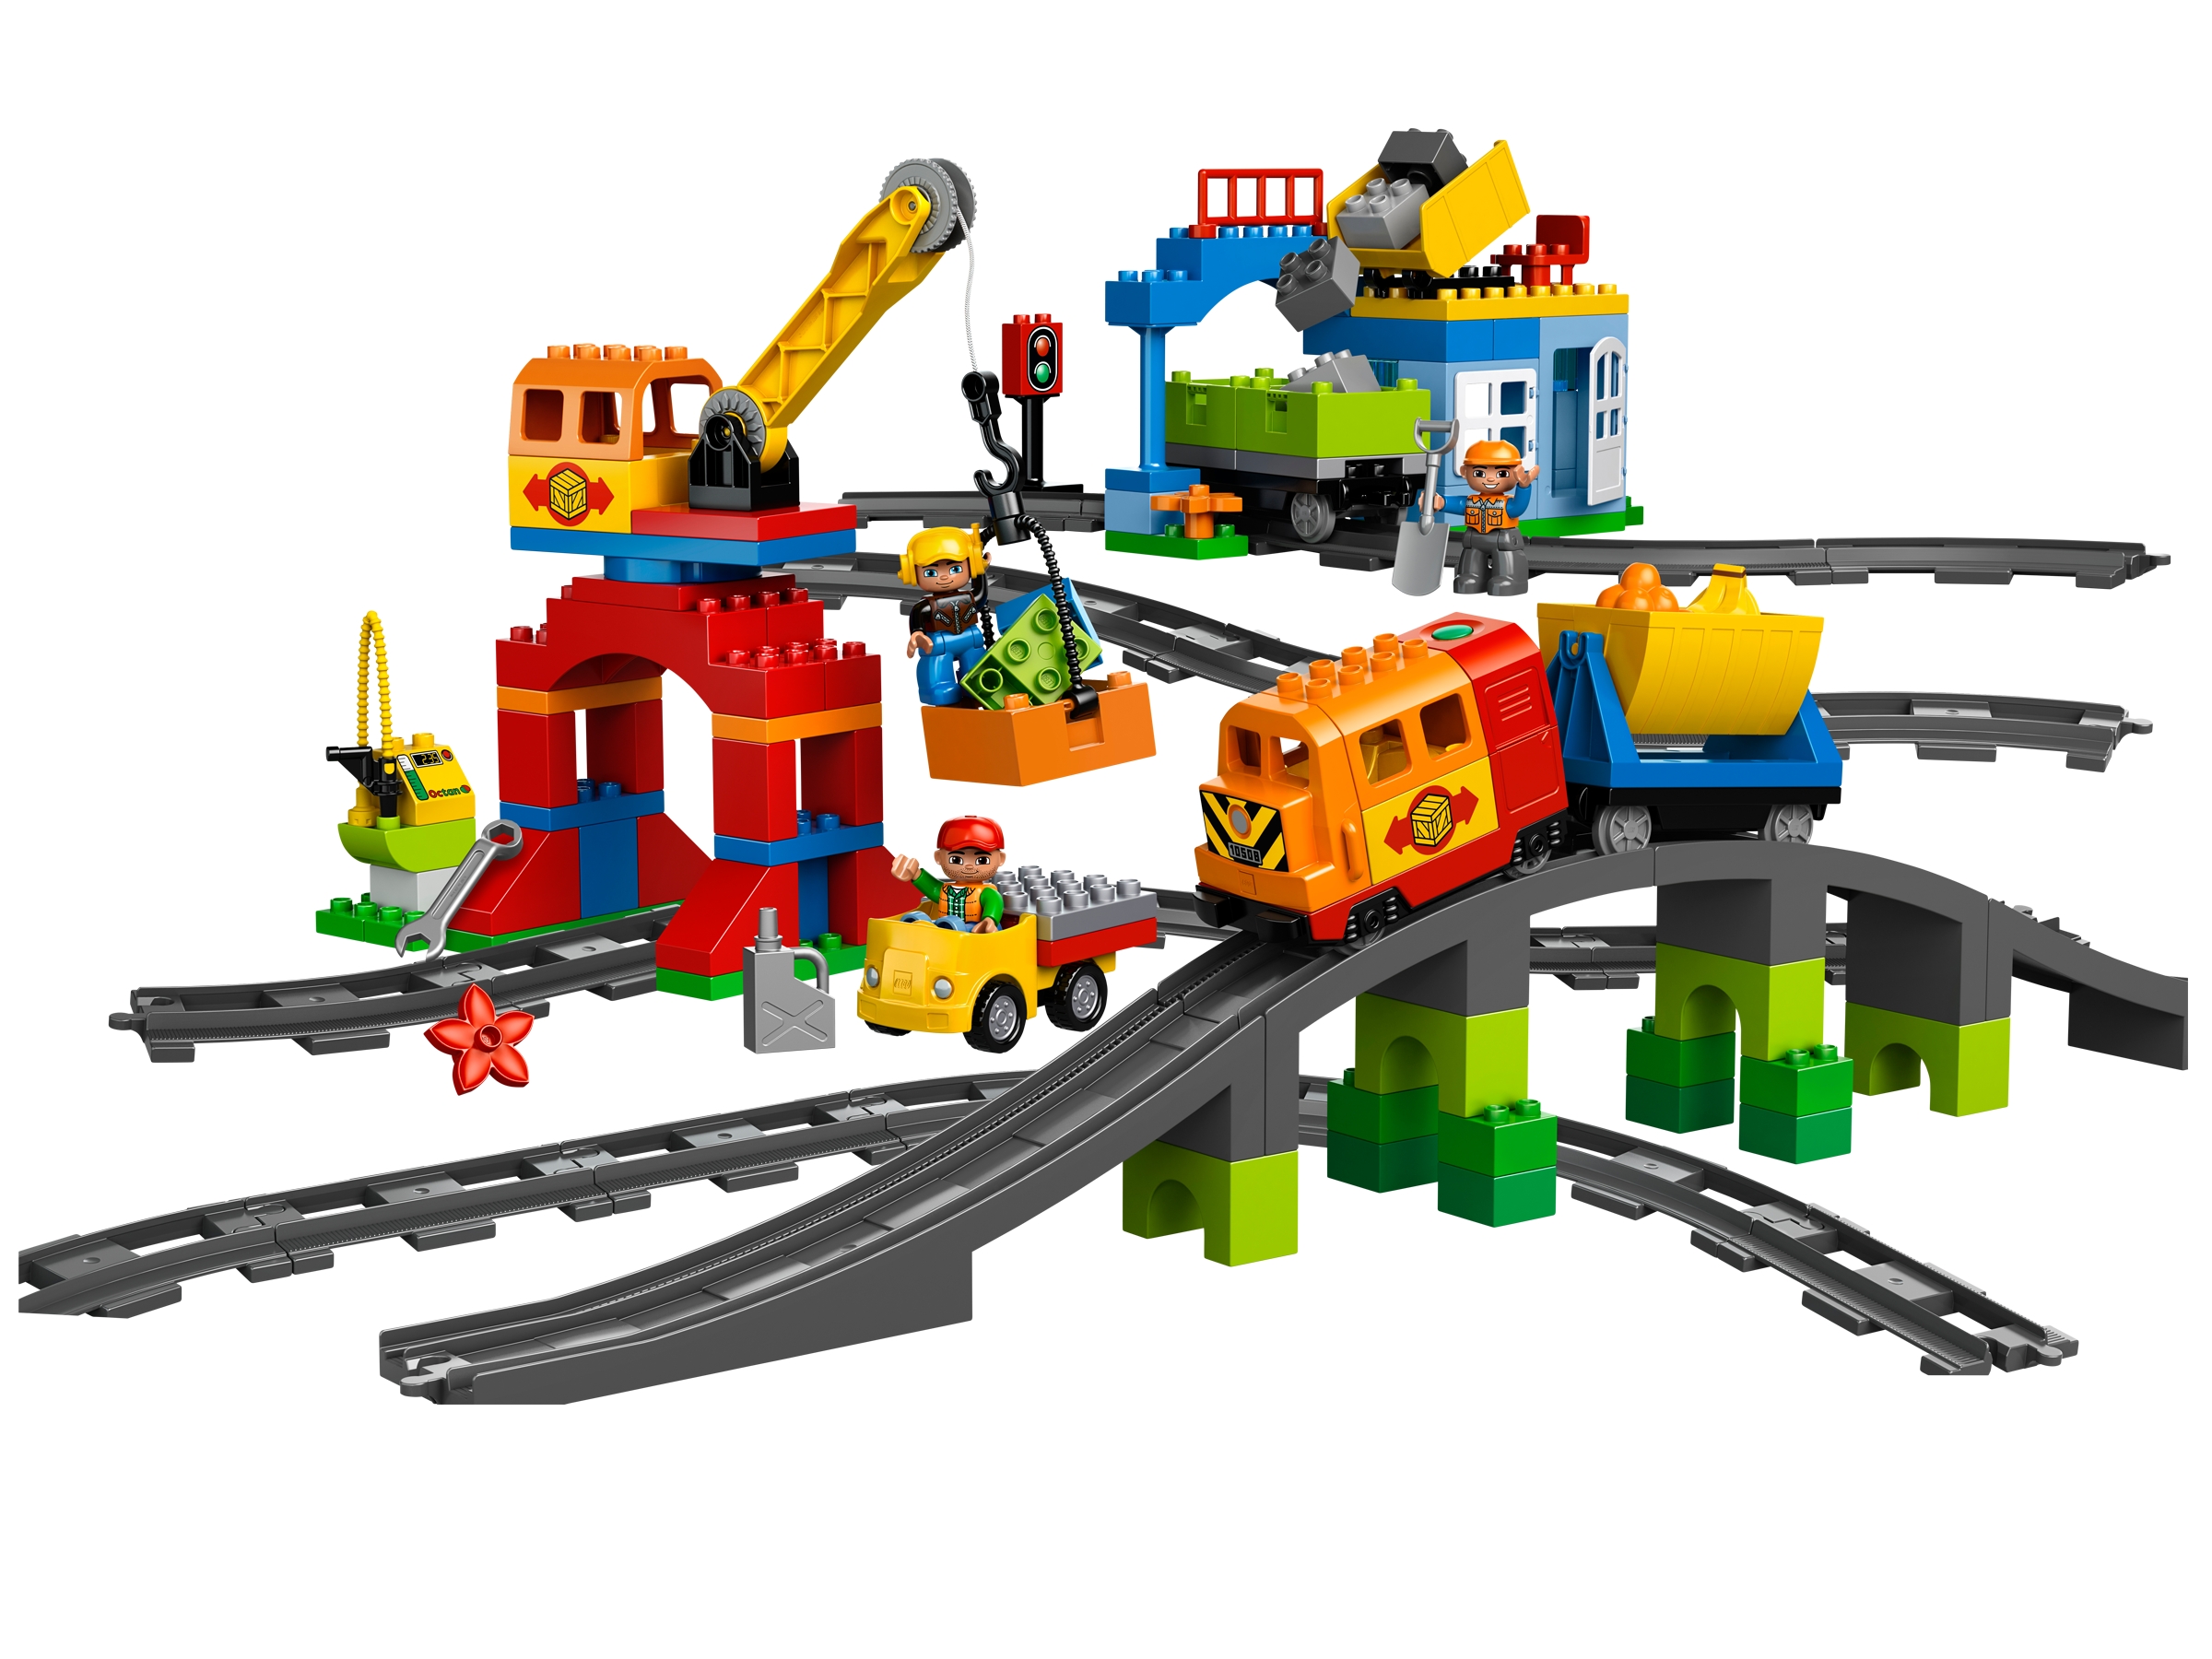 Comorama Tilbagekaldelse Diskriminering af køn Deluxe Train Set 10508 | DUPLO® | Buy online at the Official LEGO® Shop US